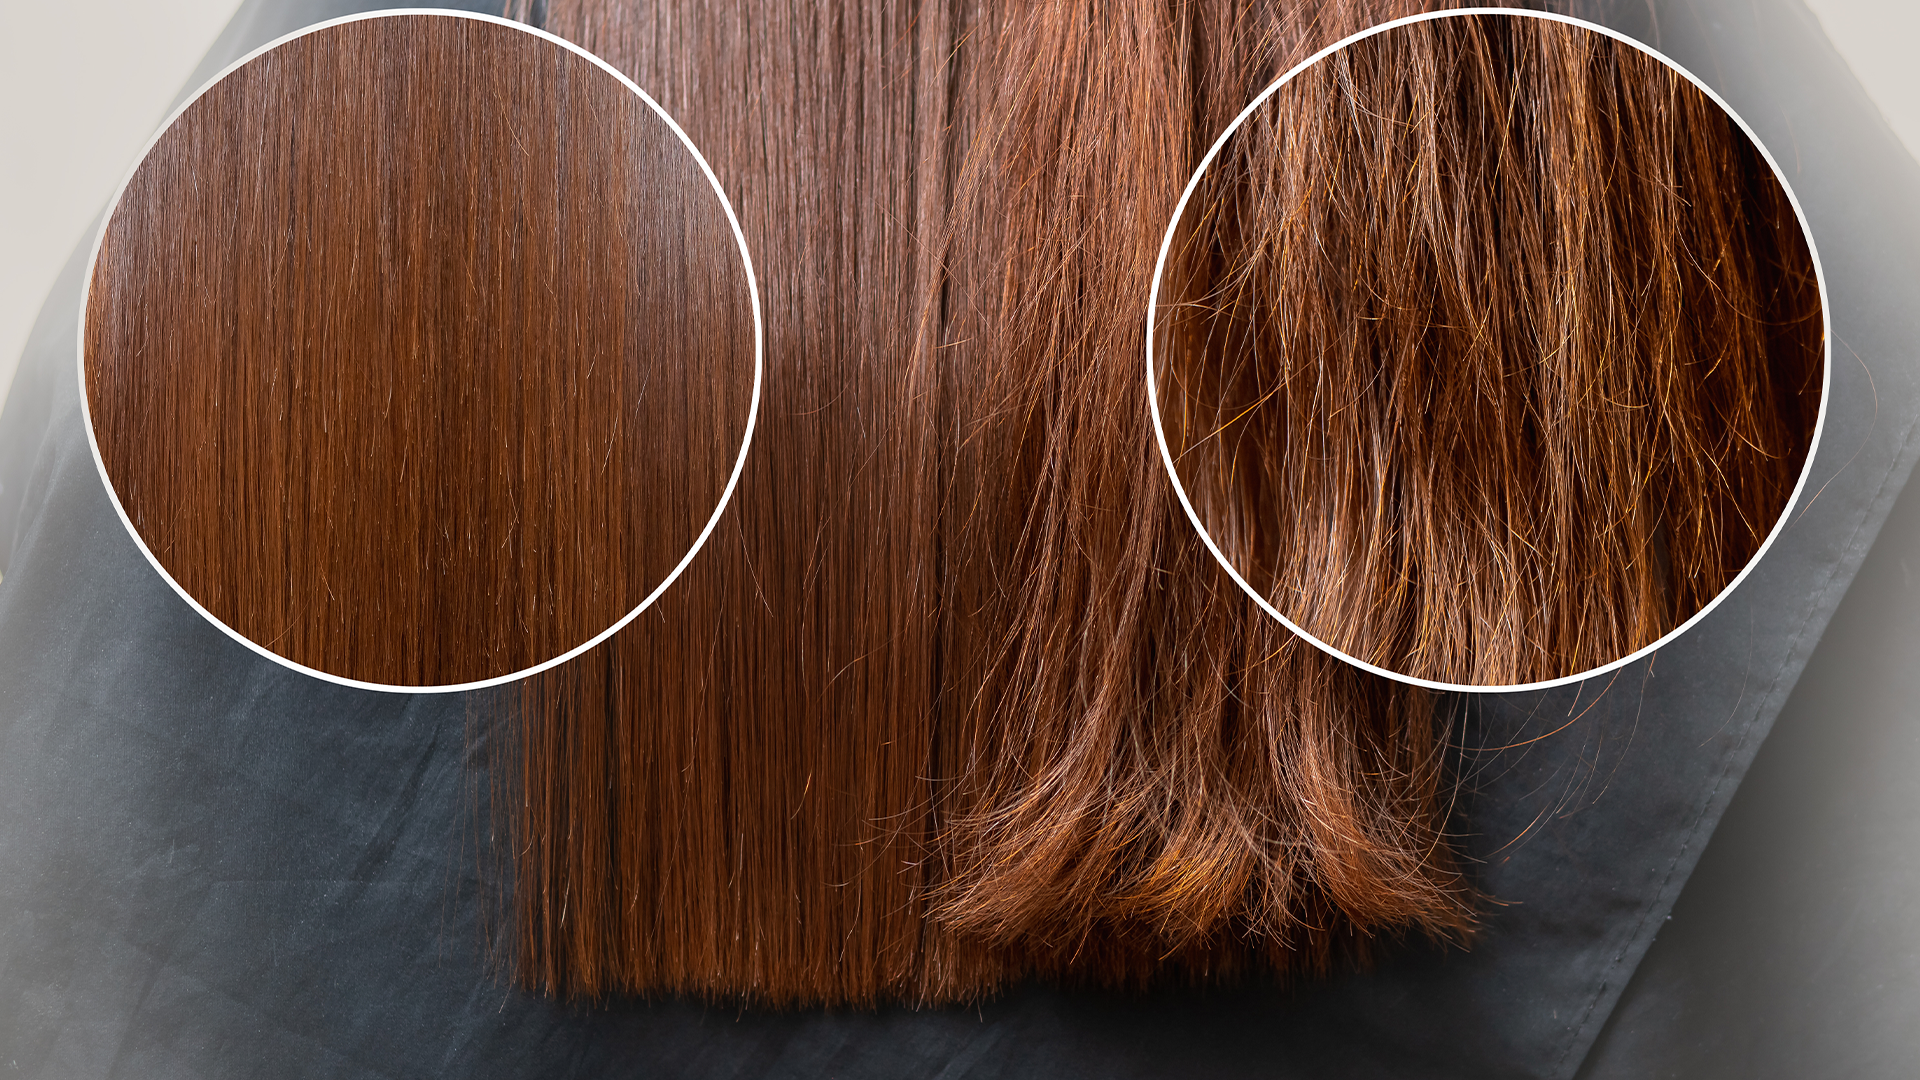 Scanna ditt hårstrå - gör en analys av hur ditt hår mår med vetenskaplig metod